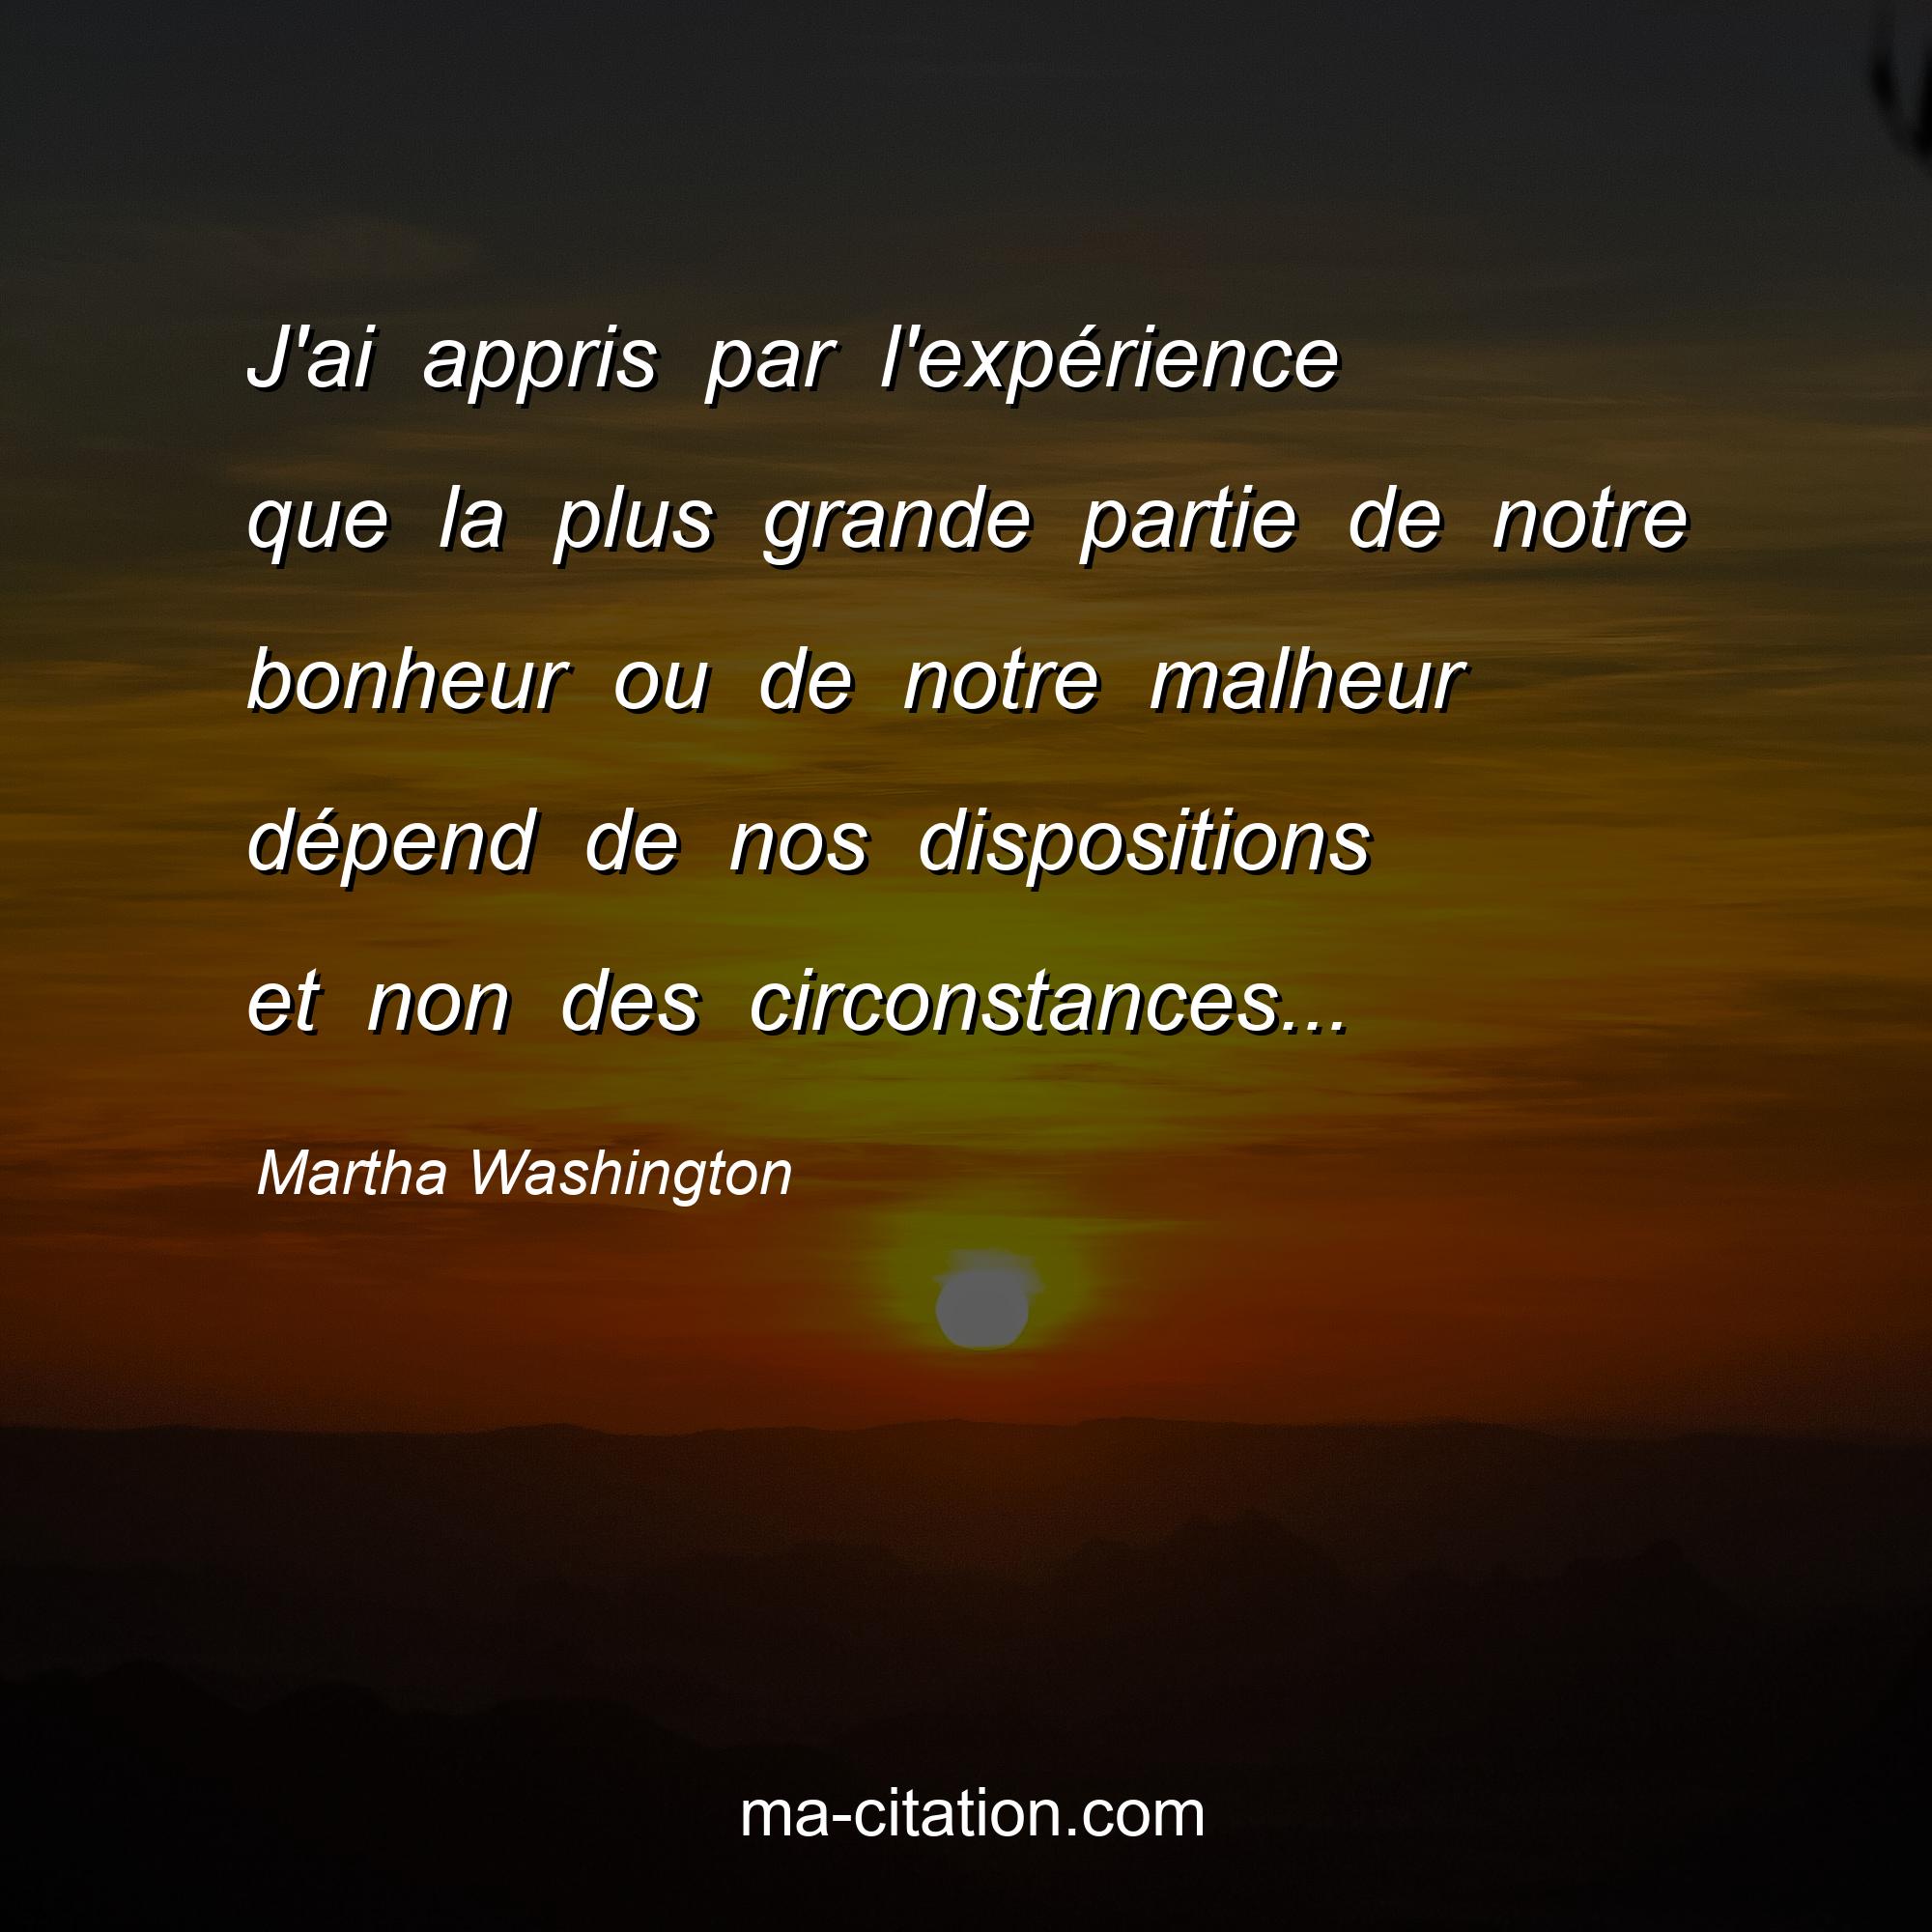 Martha Washington : J'ai appris par l'expérience que la plus grande partie de notre bonheur ou de notre malheur dépend de nos dispositions et non des circonstances...